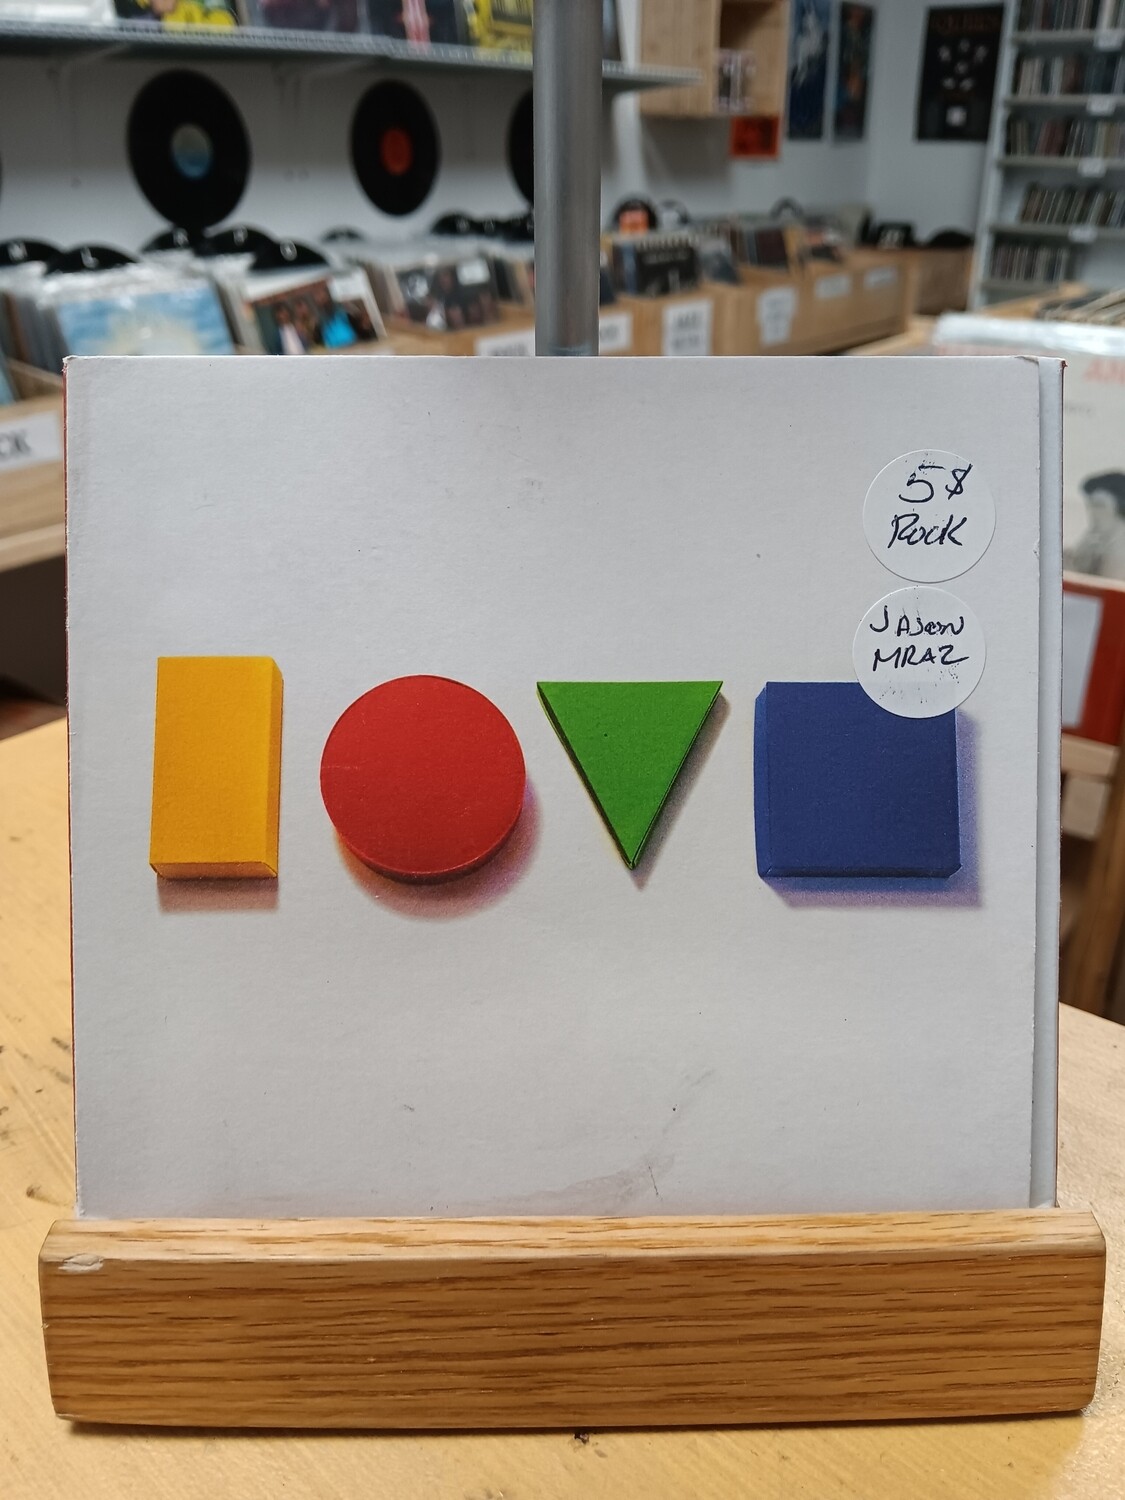 Jason Mraz - Love (CD)